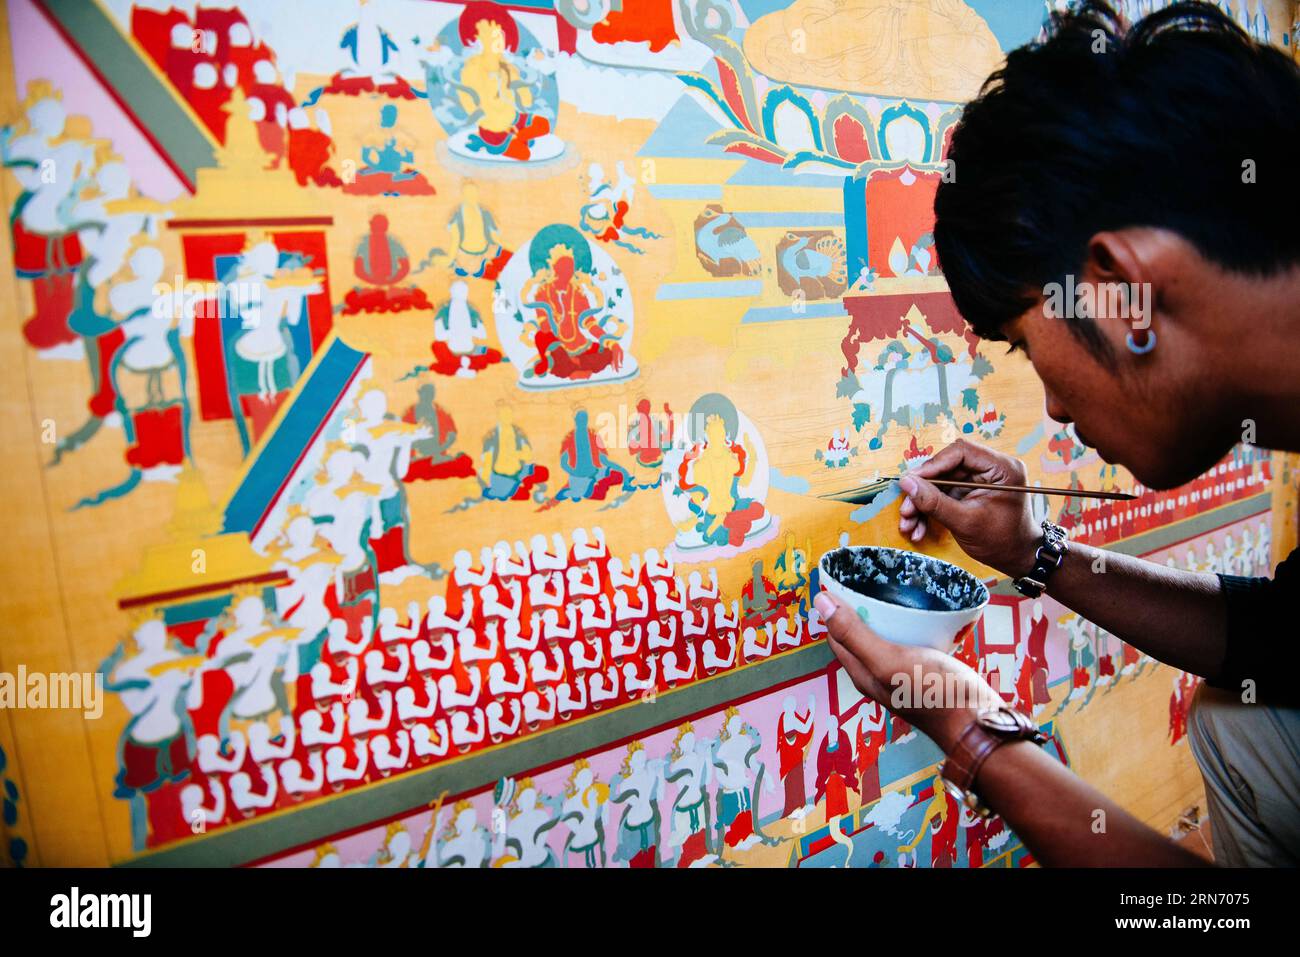 PEMA Wanza zieht Thangka in Lhasa an, der Hauptstadt der autonomen Region Tibet im Südwesten Chinas, 8. August 2015. Thangka, Musik, Film. Man kann sich nie vorstellen, wie diese scheinbar irrelevanten Elemente zusammenkommen, bis man die 21-jährige Pema Wanza trifft. Thangka, ein tibetisches Rollbanner, das verschiedene Arten von Inhalten darstellt, ist in jedem Klosterfamilienhaus in der Autonomen Region Tibet zu sehen und ist in den letzten Jahren zu einer wertvollen Sammlung geworden. Wanza begann mit elf Jahren Thangka zu zeichnen. Nach dem Abschluss der Grundschule entschied er sich, Thangka-Zeichnung als seinen Beruf und wir zu machen Stockfoto